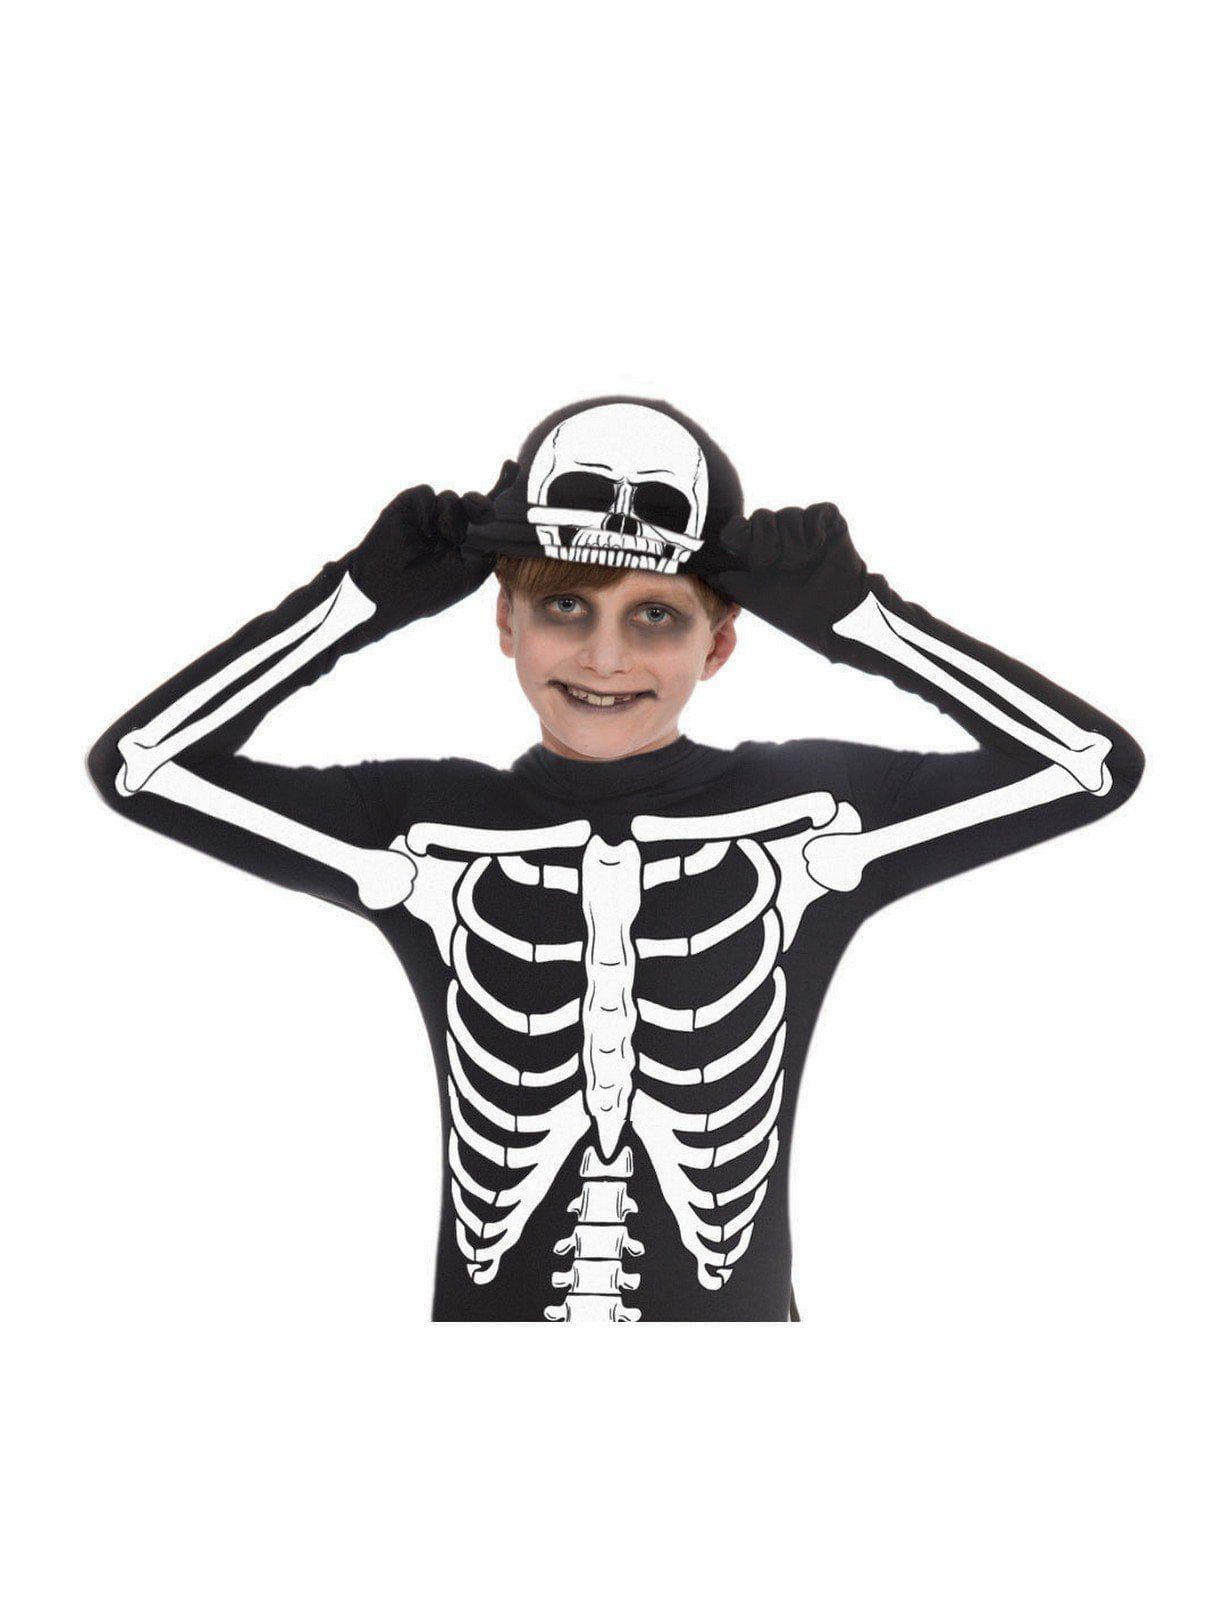 Kid's Bone Suit Costume - costumes.com